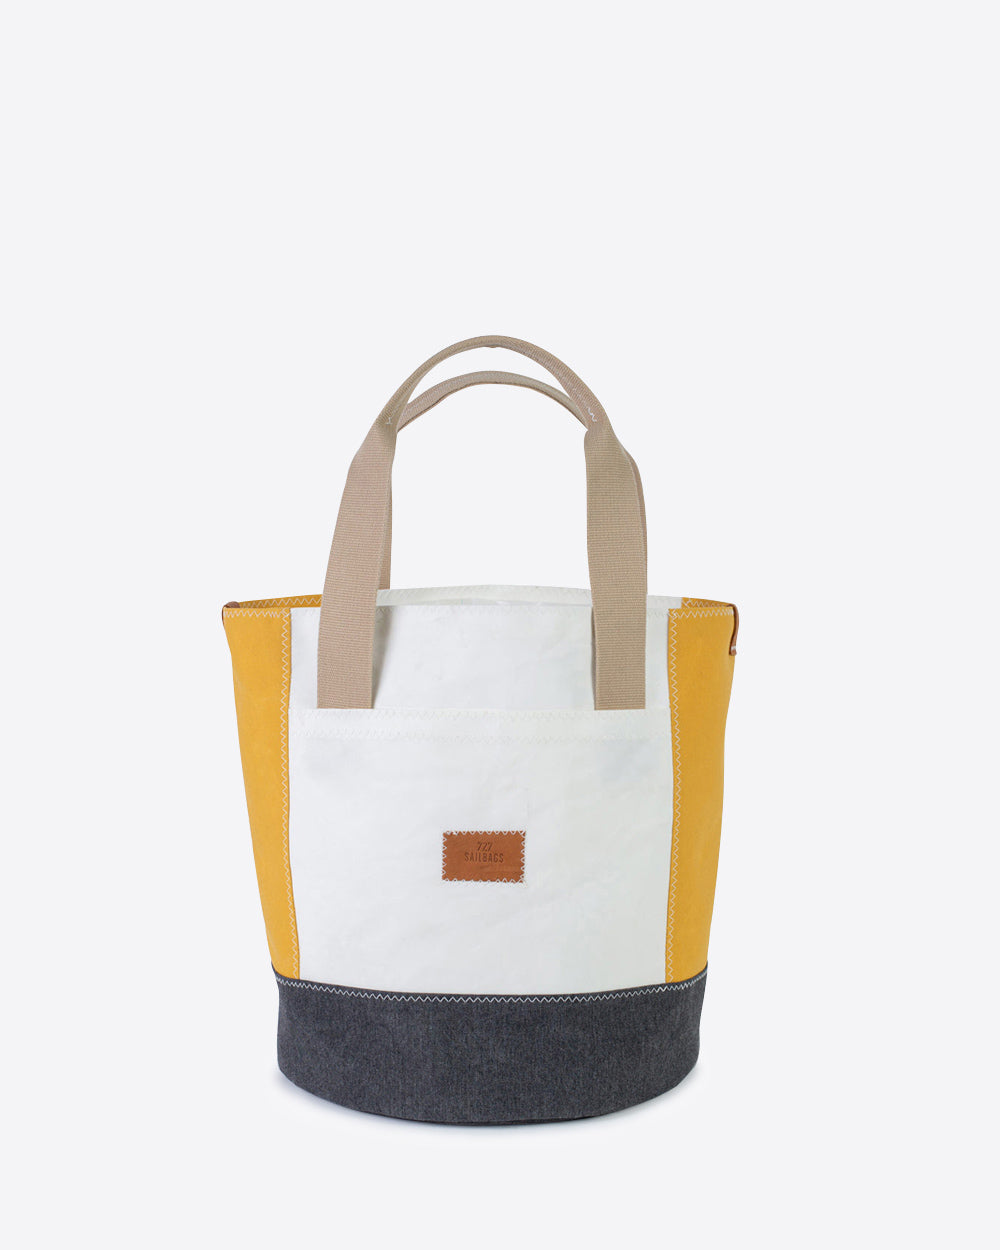 Damen Handtasche "Bucket Bag" by 727 Sailbags / Segeltuch weiß gelb / Boden grau